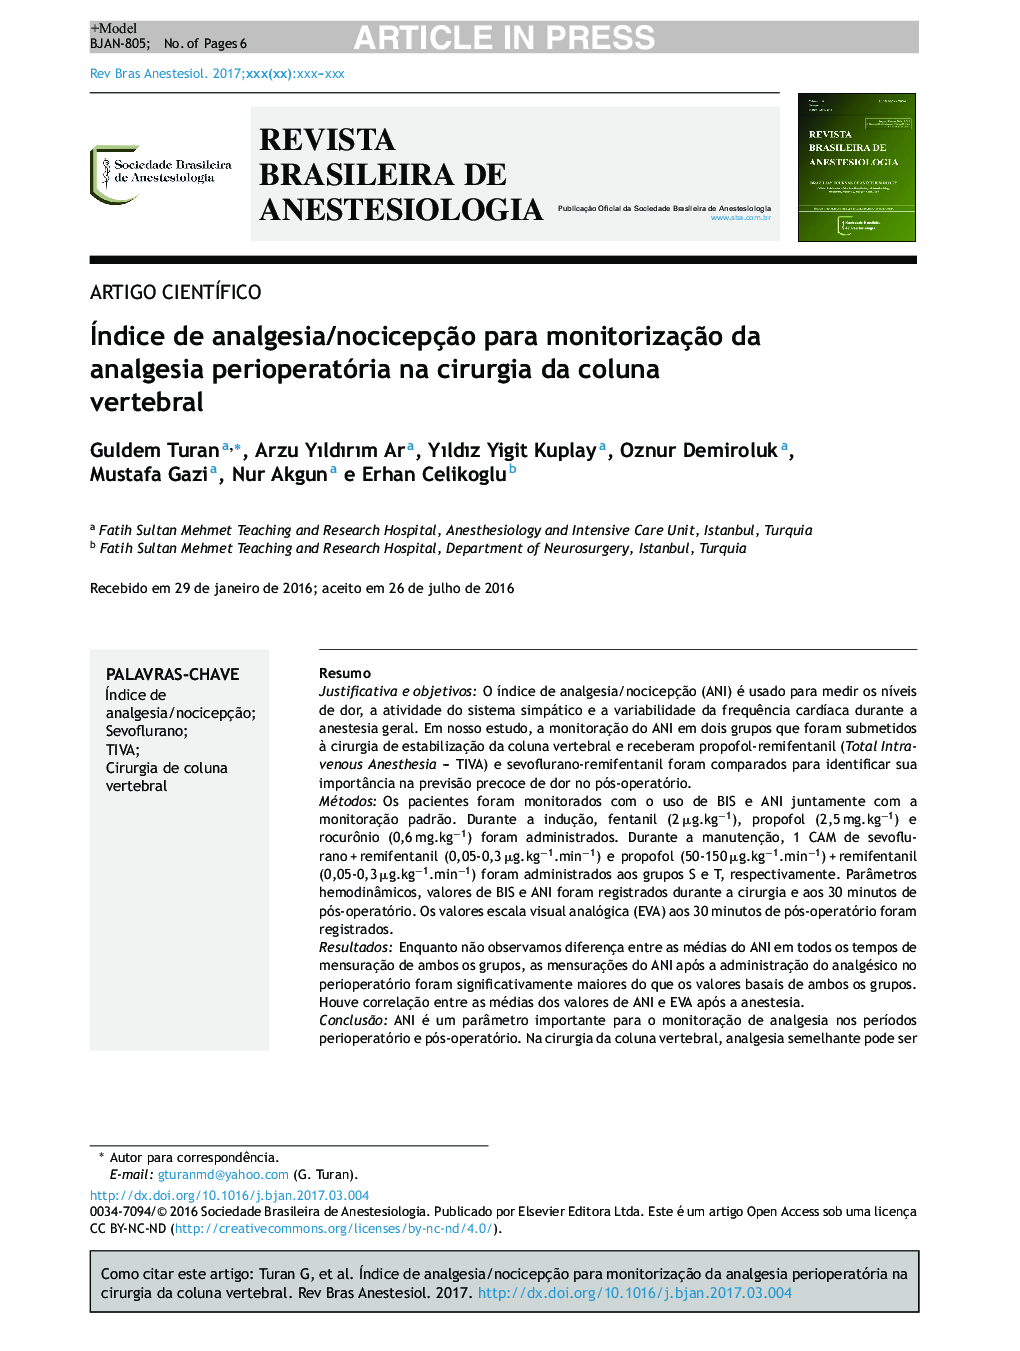 Índice de analgesia/nocicepçÃ£o para monitorizaçÃ£o da analgesia perioperatória na cirurgia da coluna vertebral